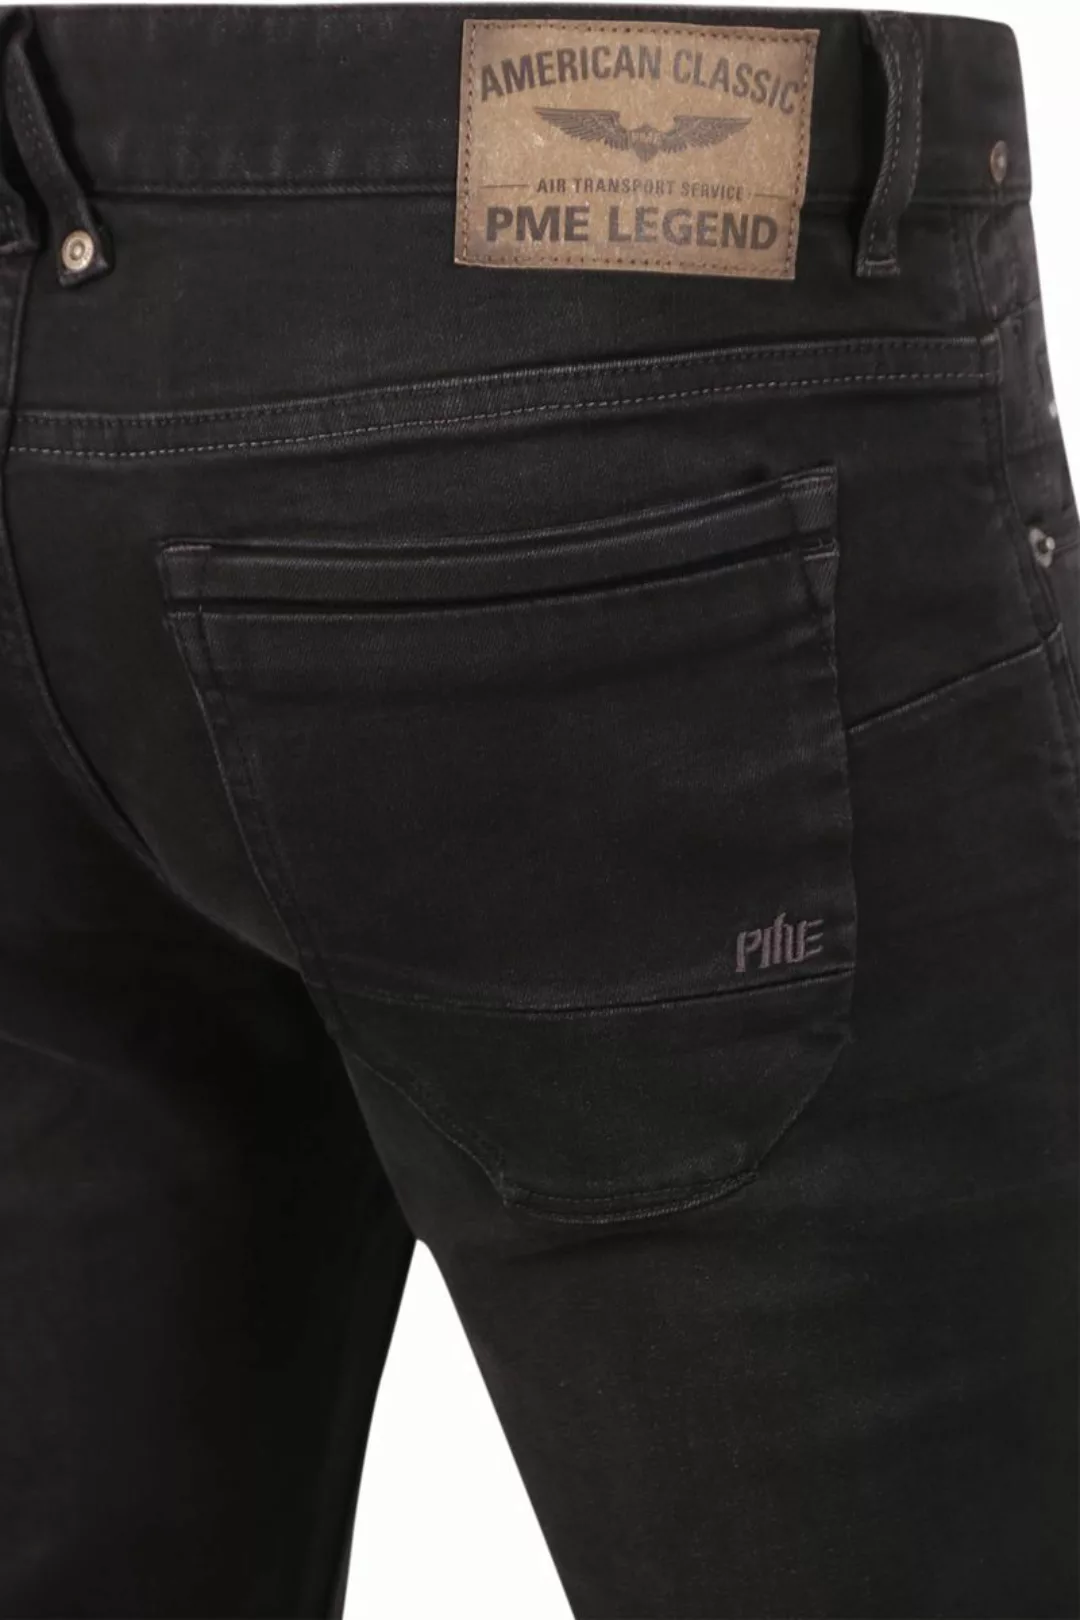 PME Legend Nightflight Jeans Schwarz RBD - Größe W 31 - L 34 günstig online kaufen